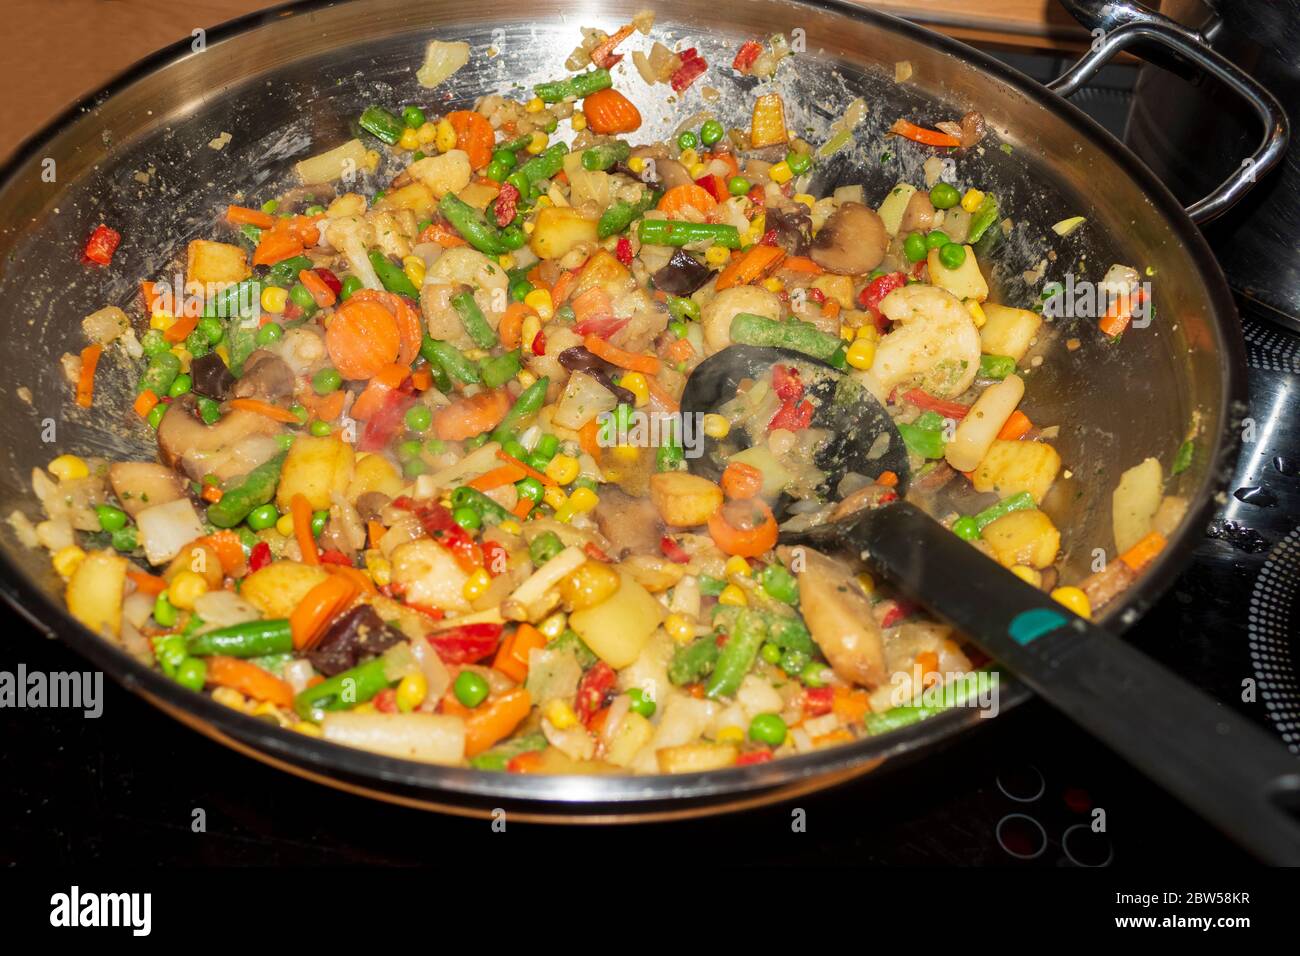 Gemüse in einem Wok angedünstet, Deckel öffnen läßt es dampfen Foto Stock